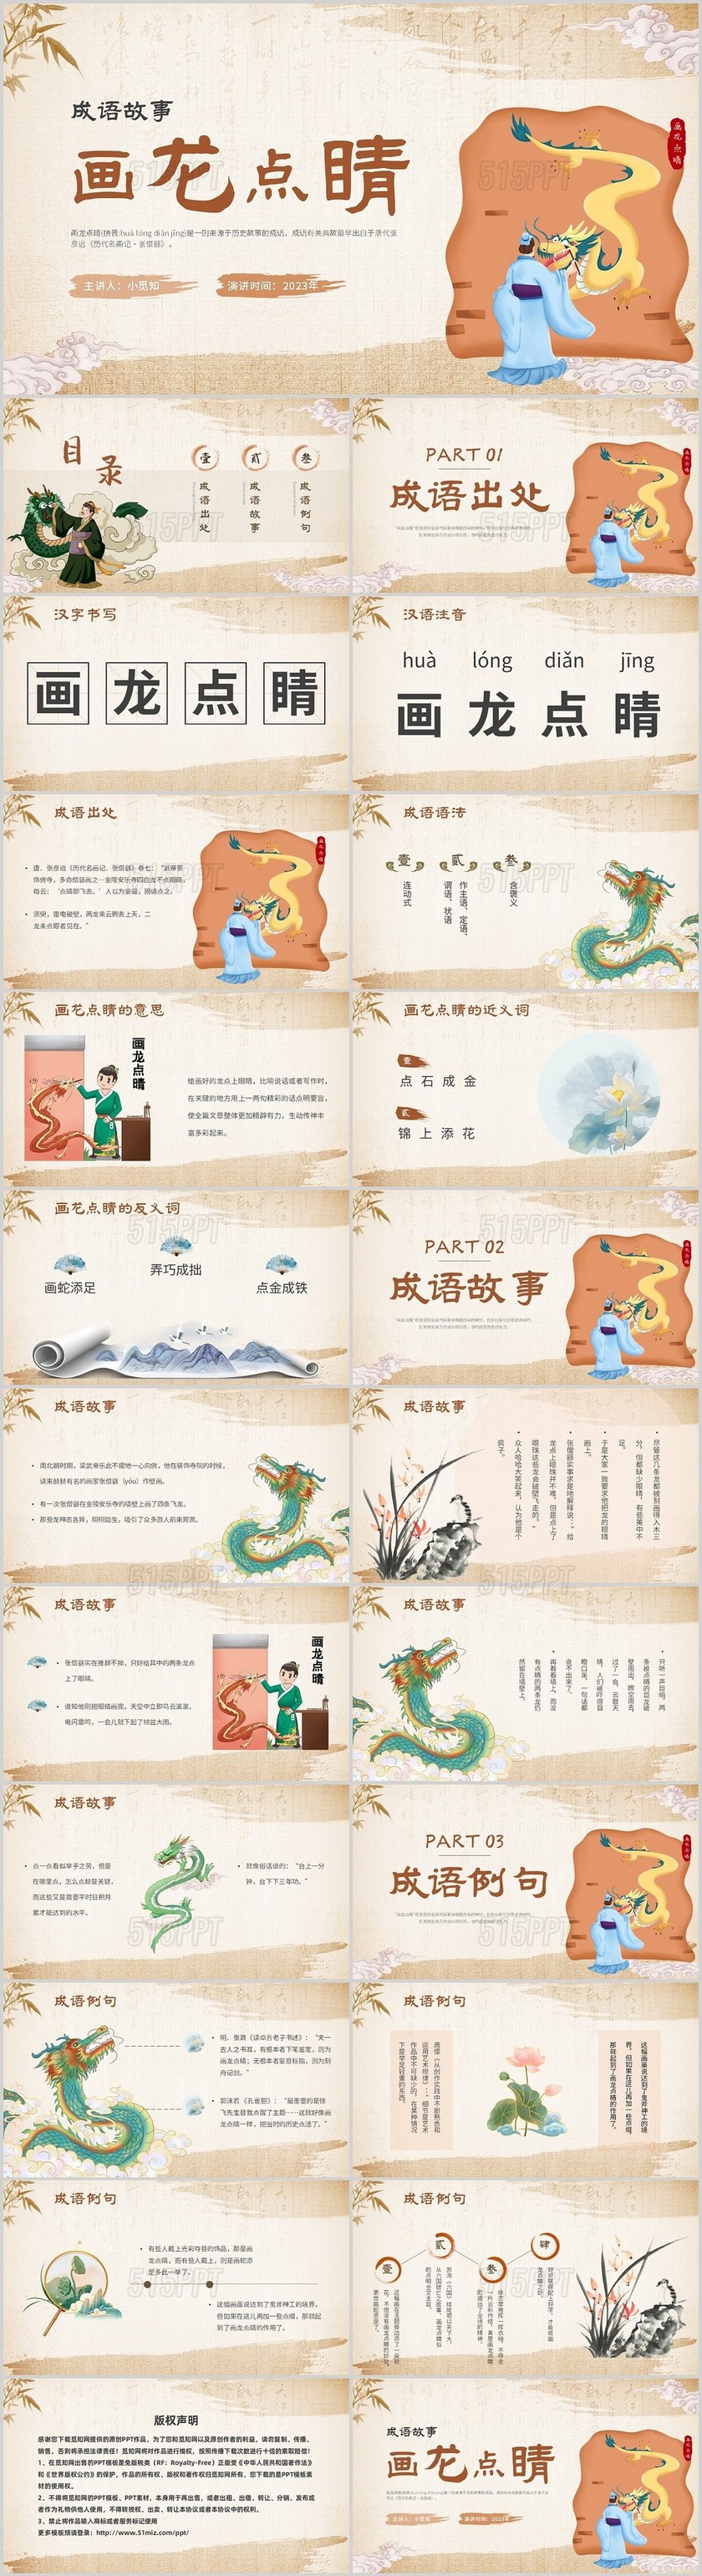 复古中国风卡通插画手绘成语故事画龙点睛主题PPT模板